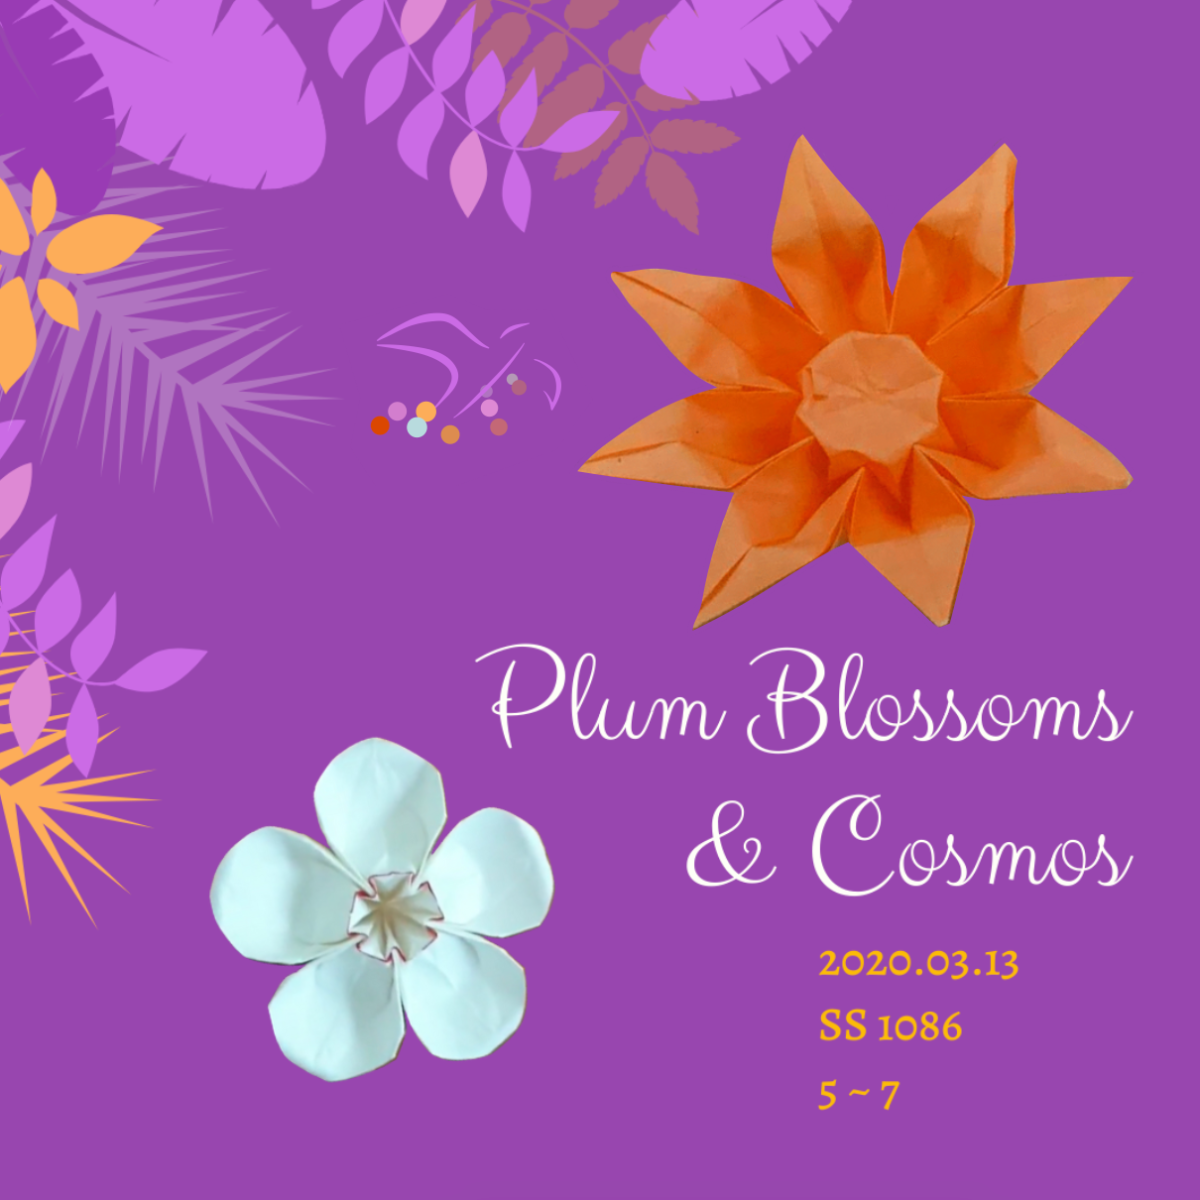 Origami Plum Blossoms & Cosmos